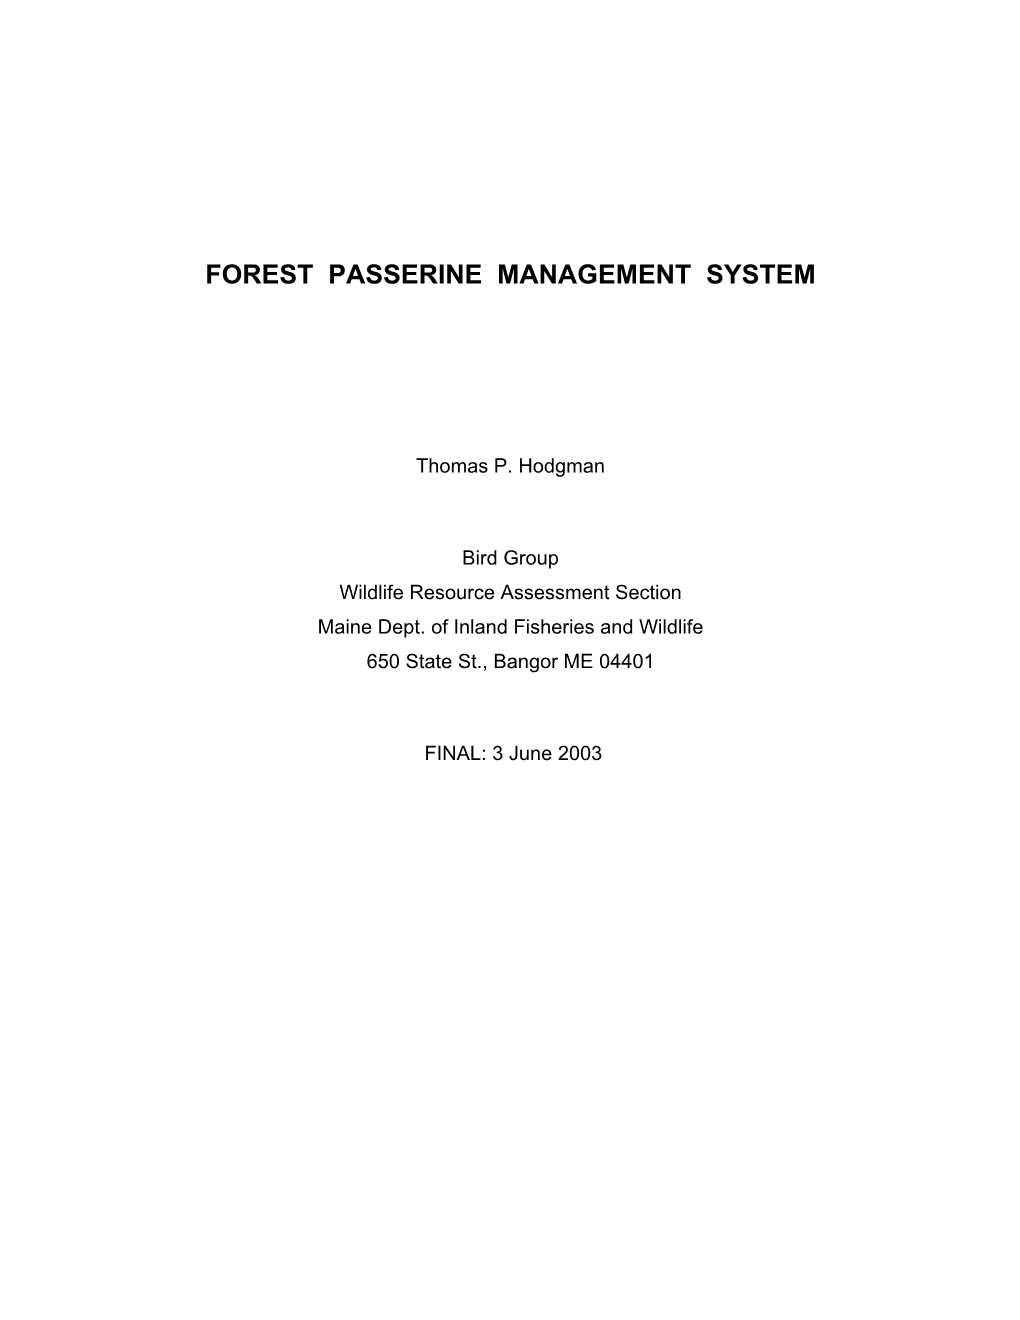 Forest Passerine Species Management System